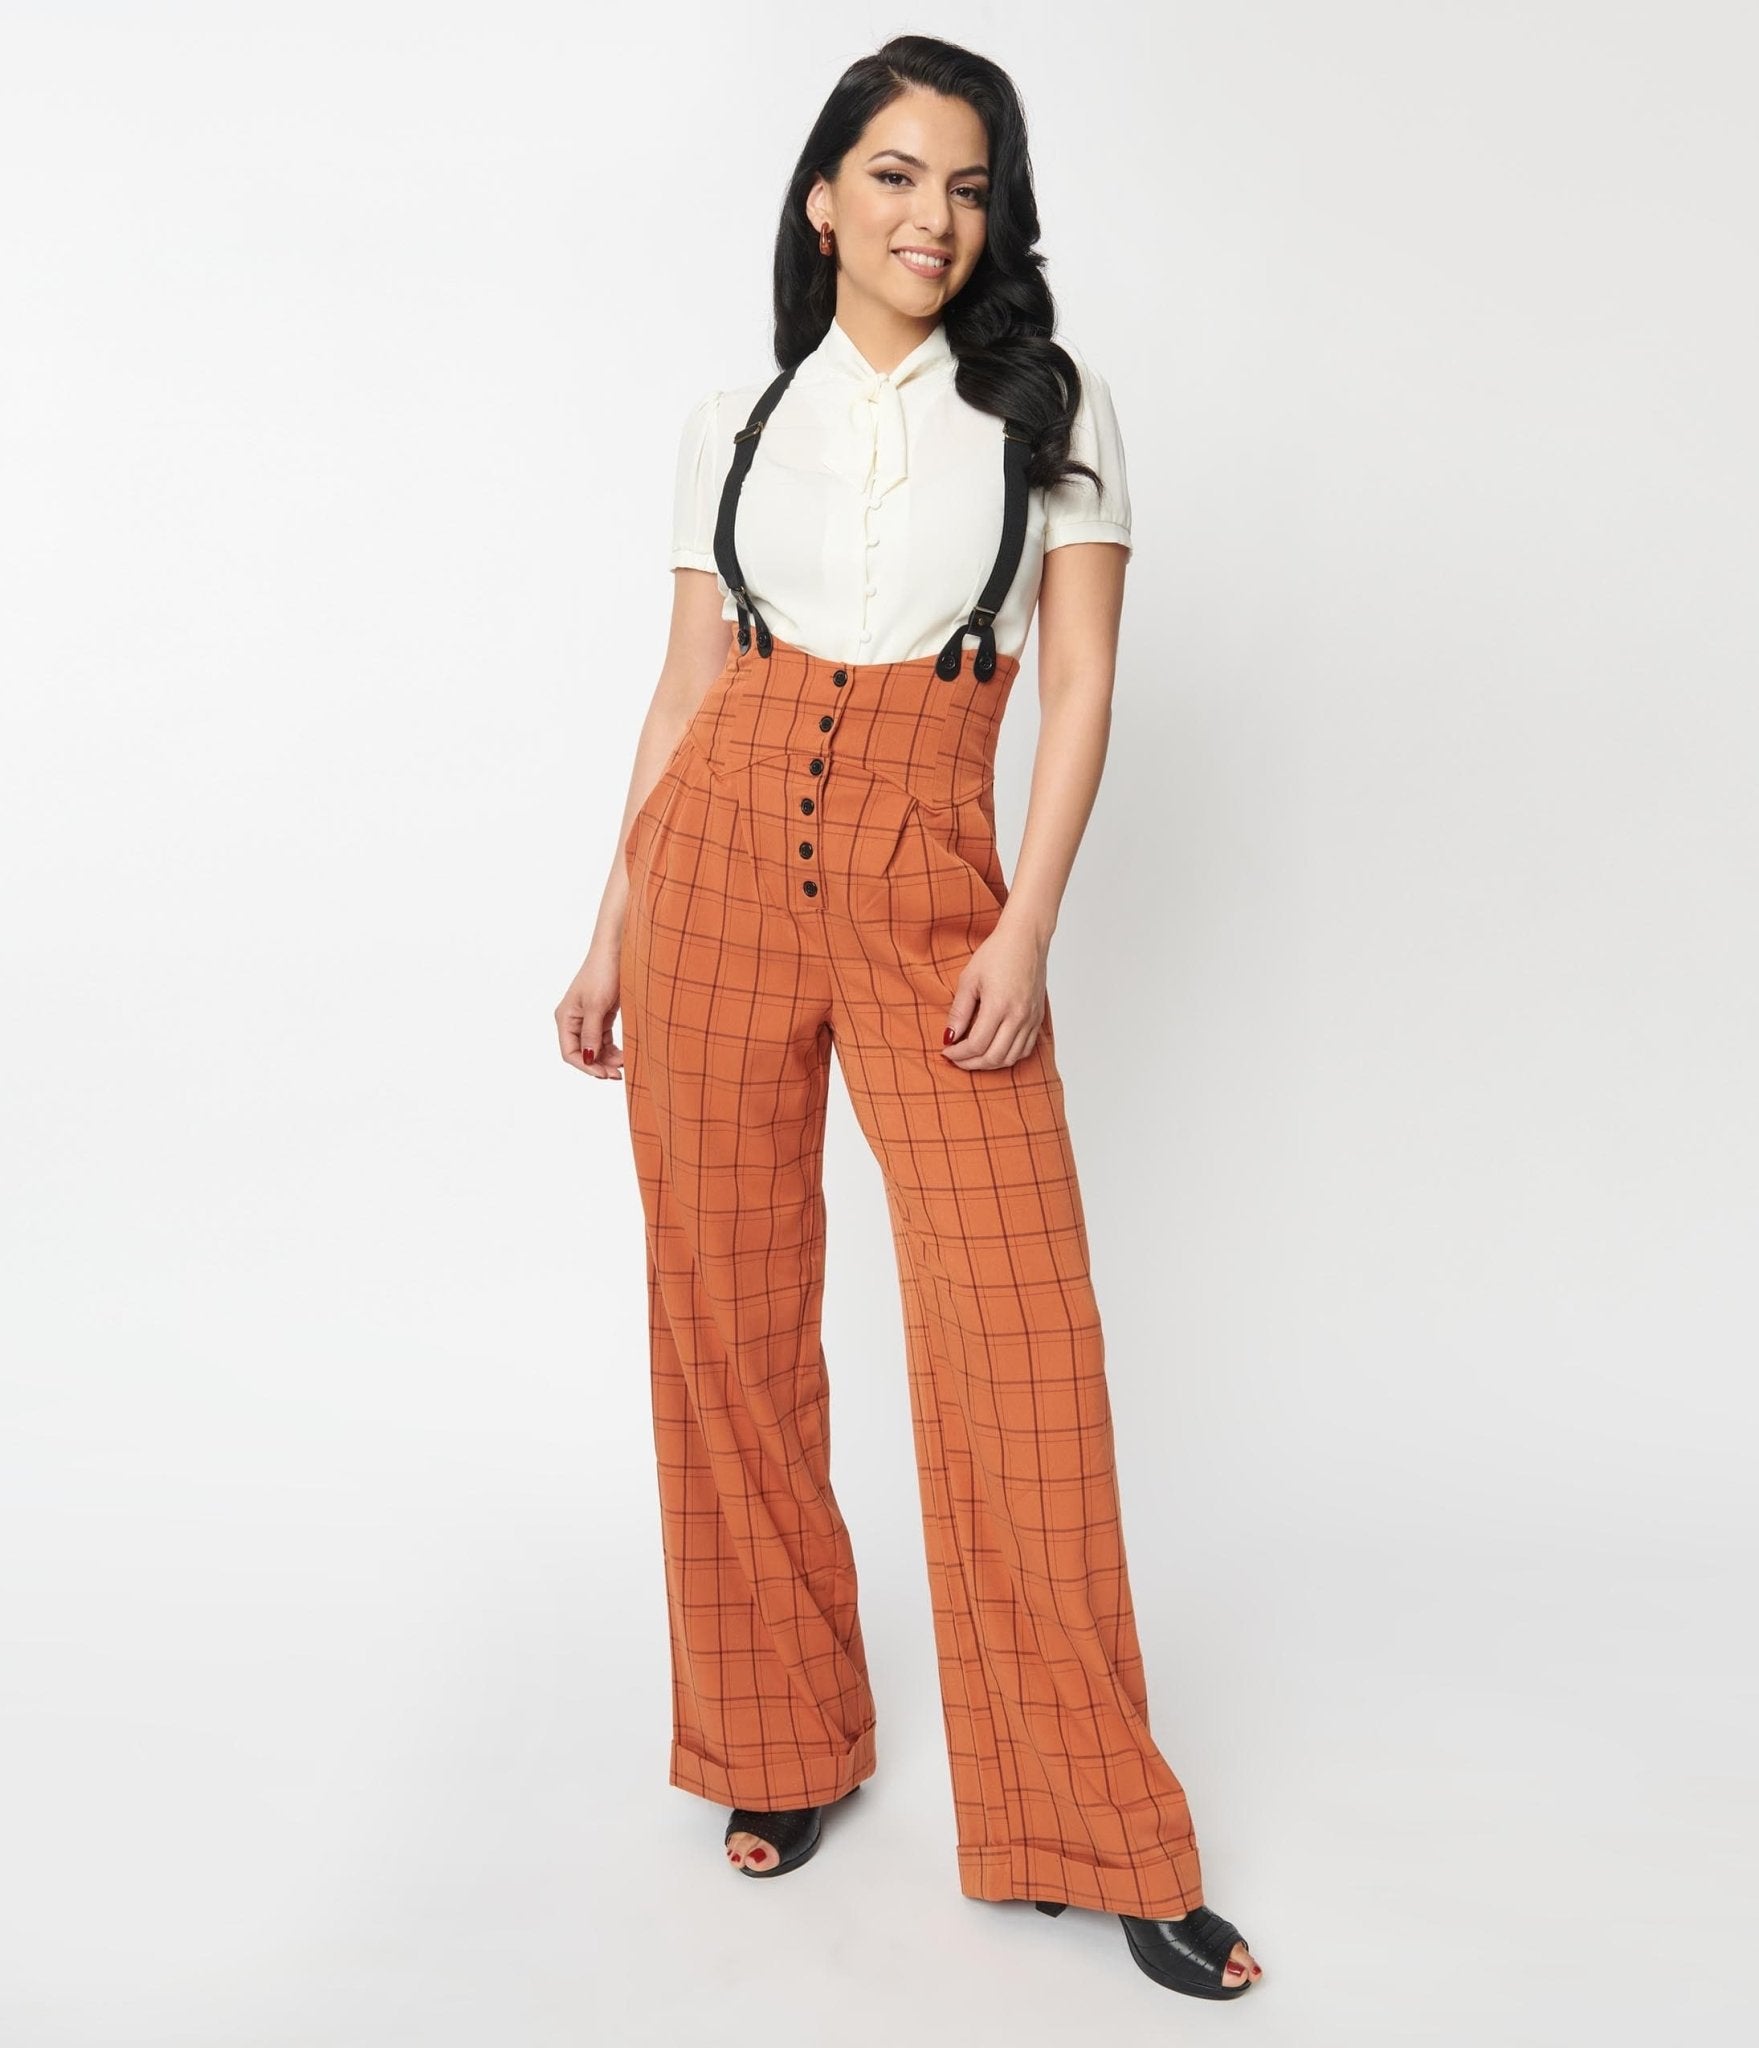 https://www.unique-vintage.com/cdn/shop/products/unique-vintage-orange-windowpane-thelma-suspender-pants-114259.jpg?v=1703099623